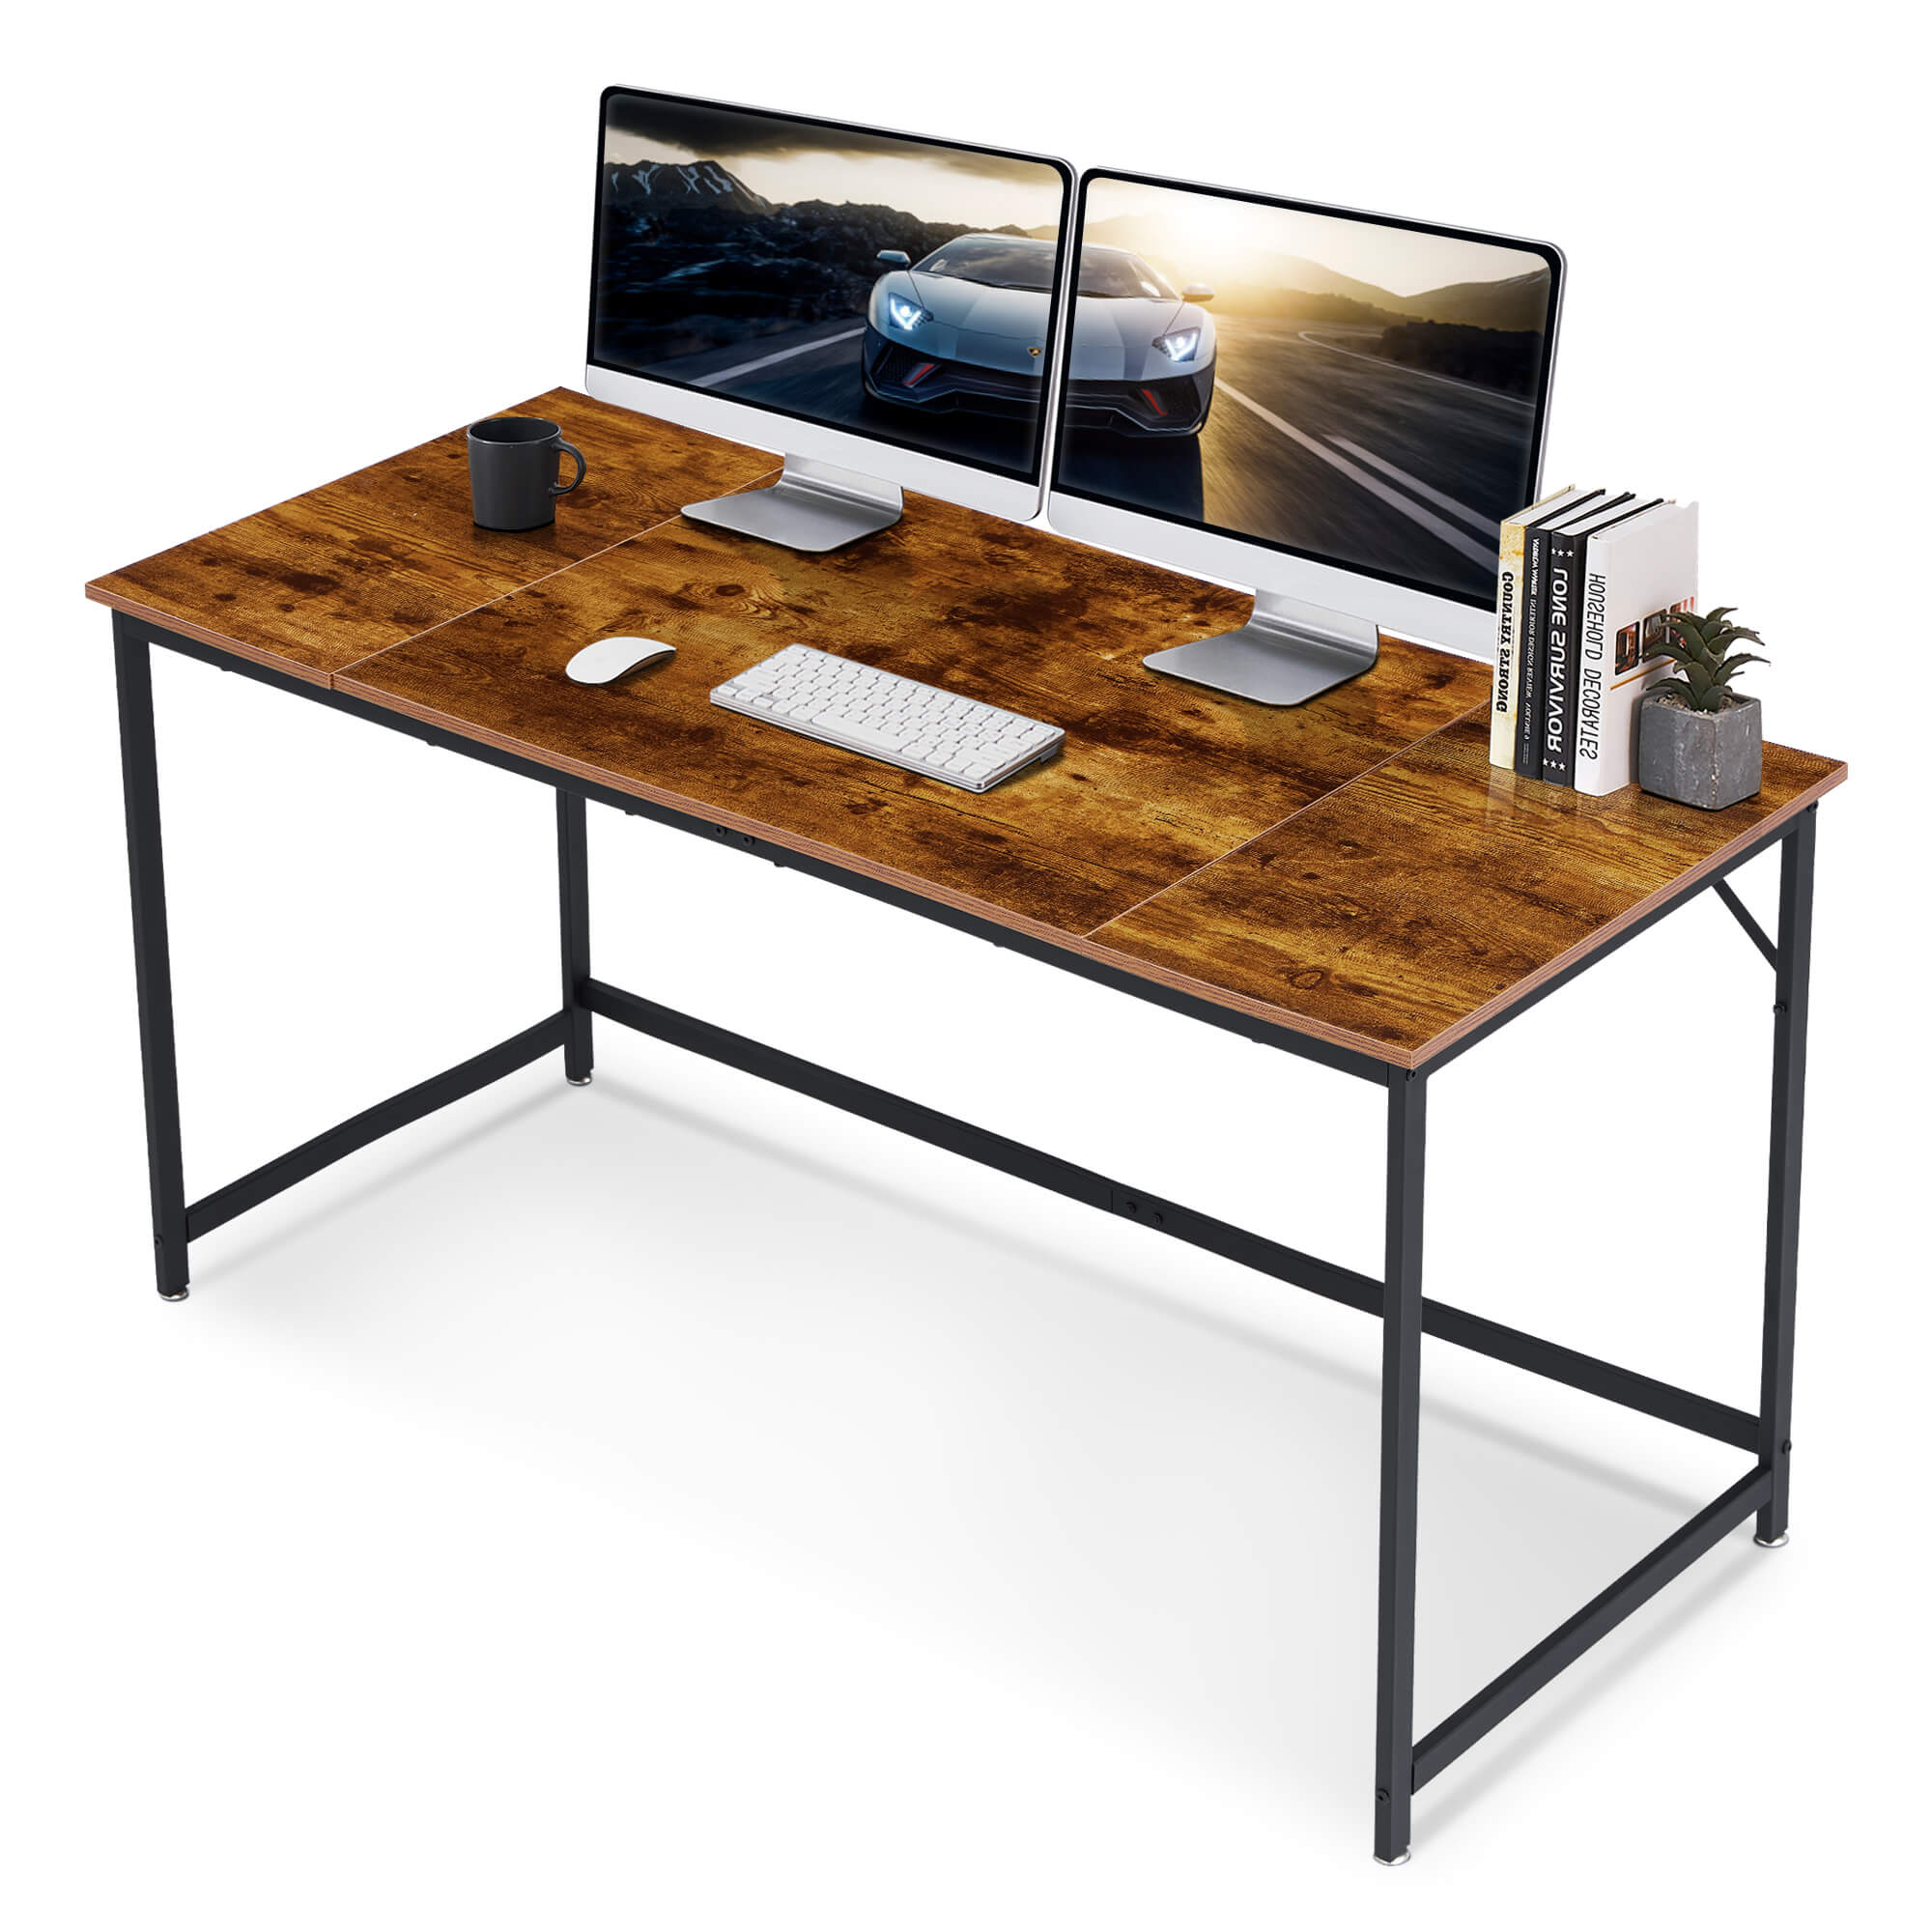 Ivinta Computer Desk, Industrial Style Study Desk with Black Frame - Ivinta